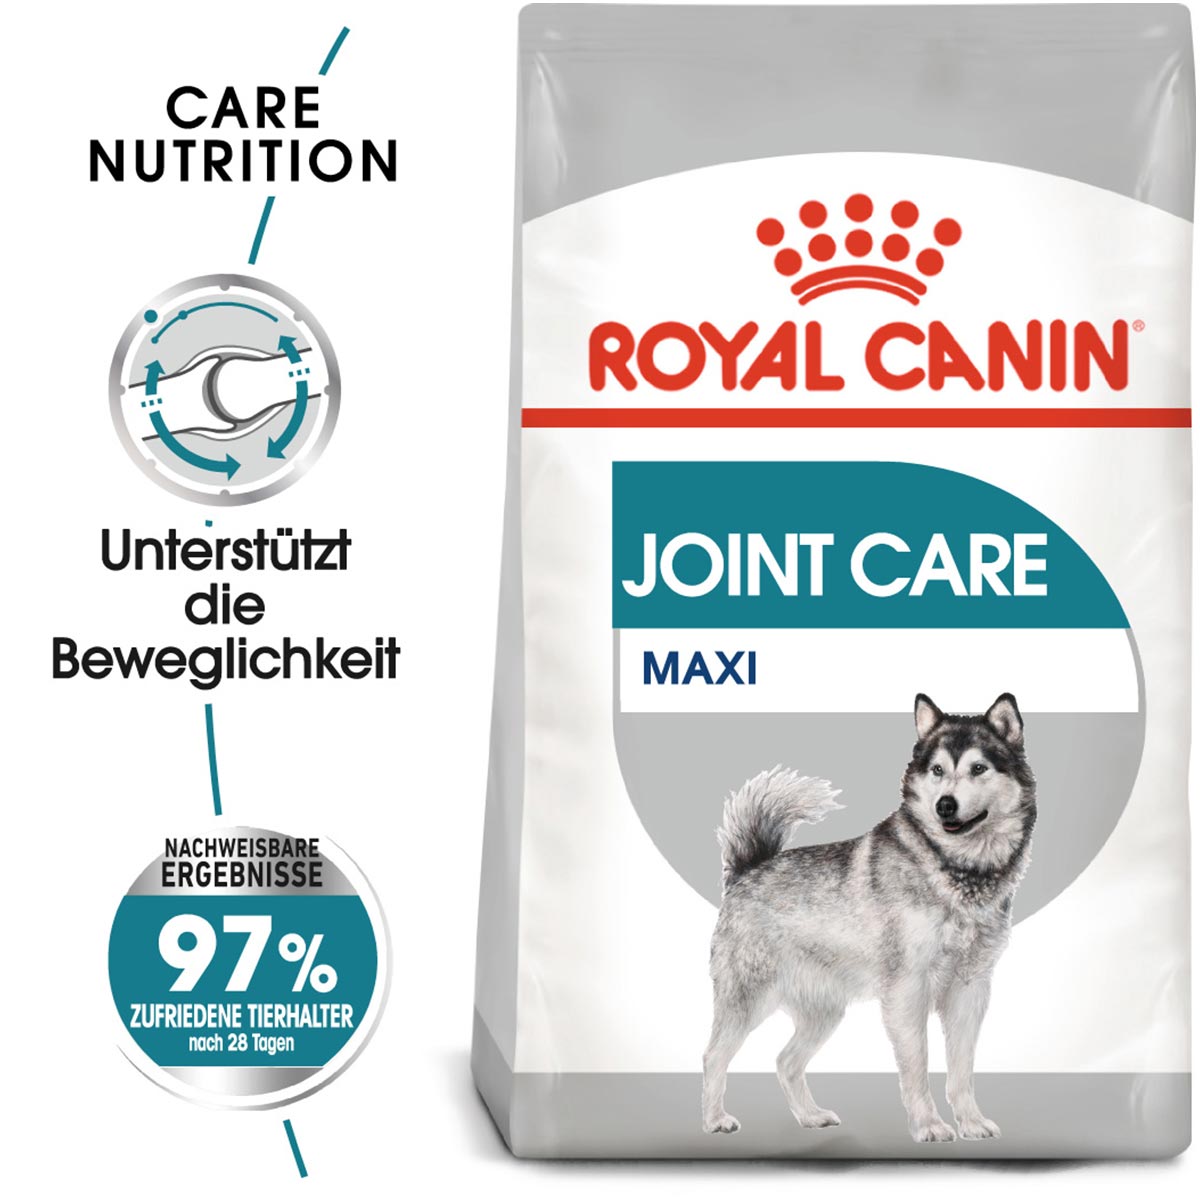 ROYAL CANIN JOINT CARE MAXI Trockenfutter für große Hunde mit empfindlichen Gelenken 2x10kg von Royal Canin